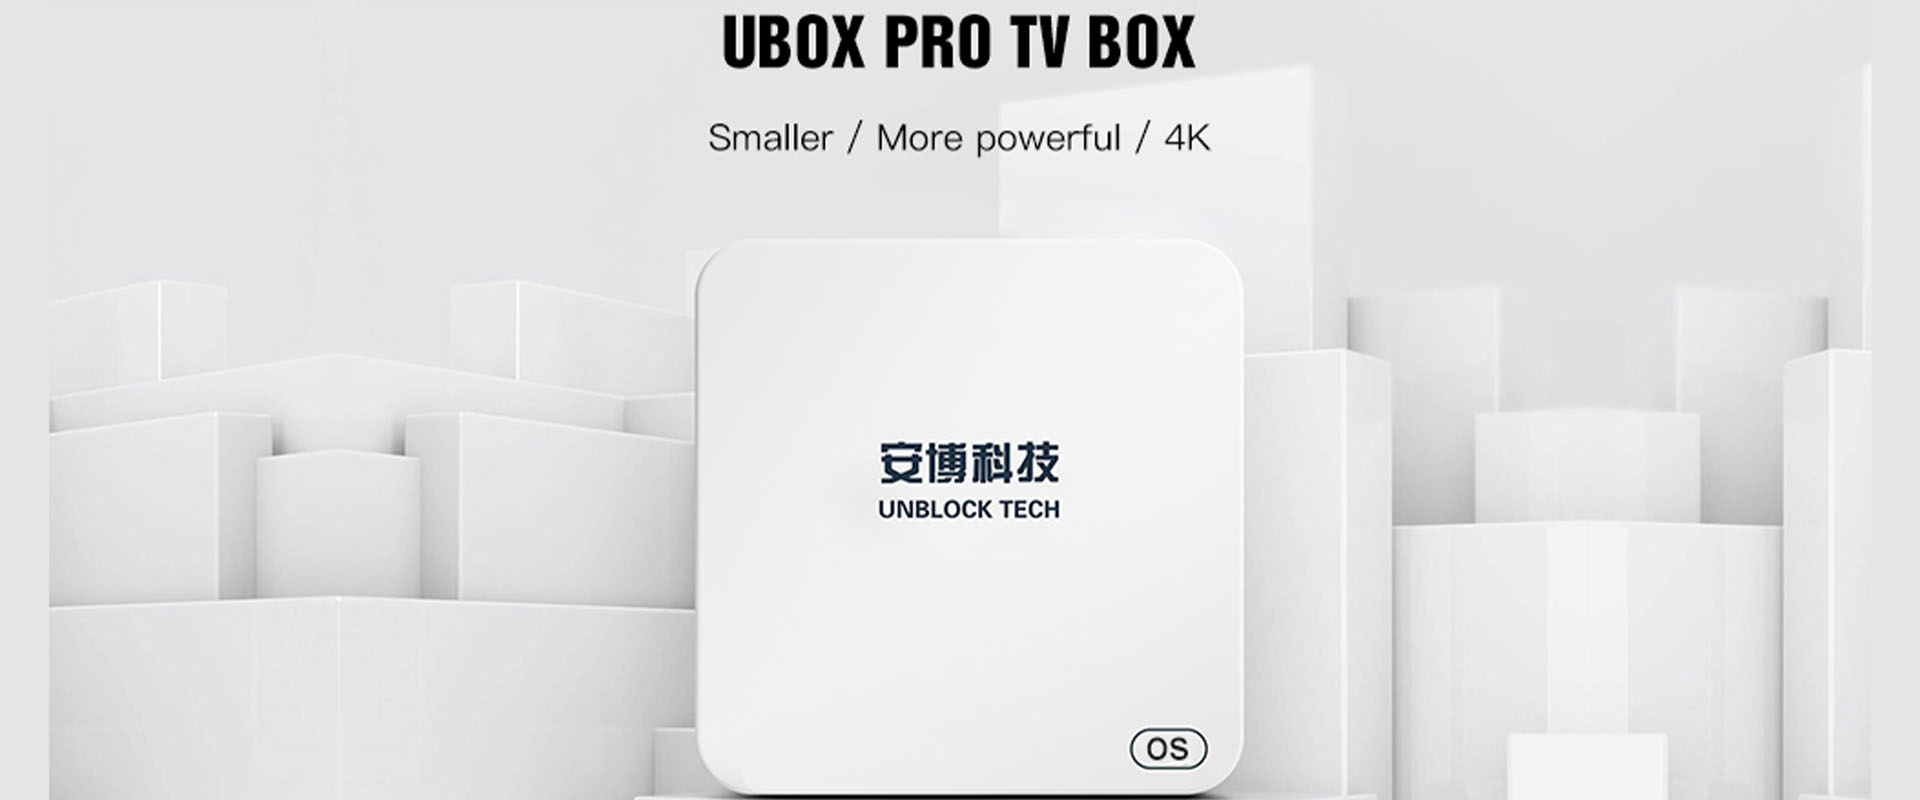 Ubox5 Pro TV Box - Unblock Tech 최신 버전 UBOX Gen 5 Pro Max